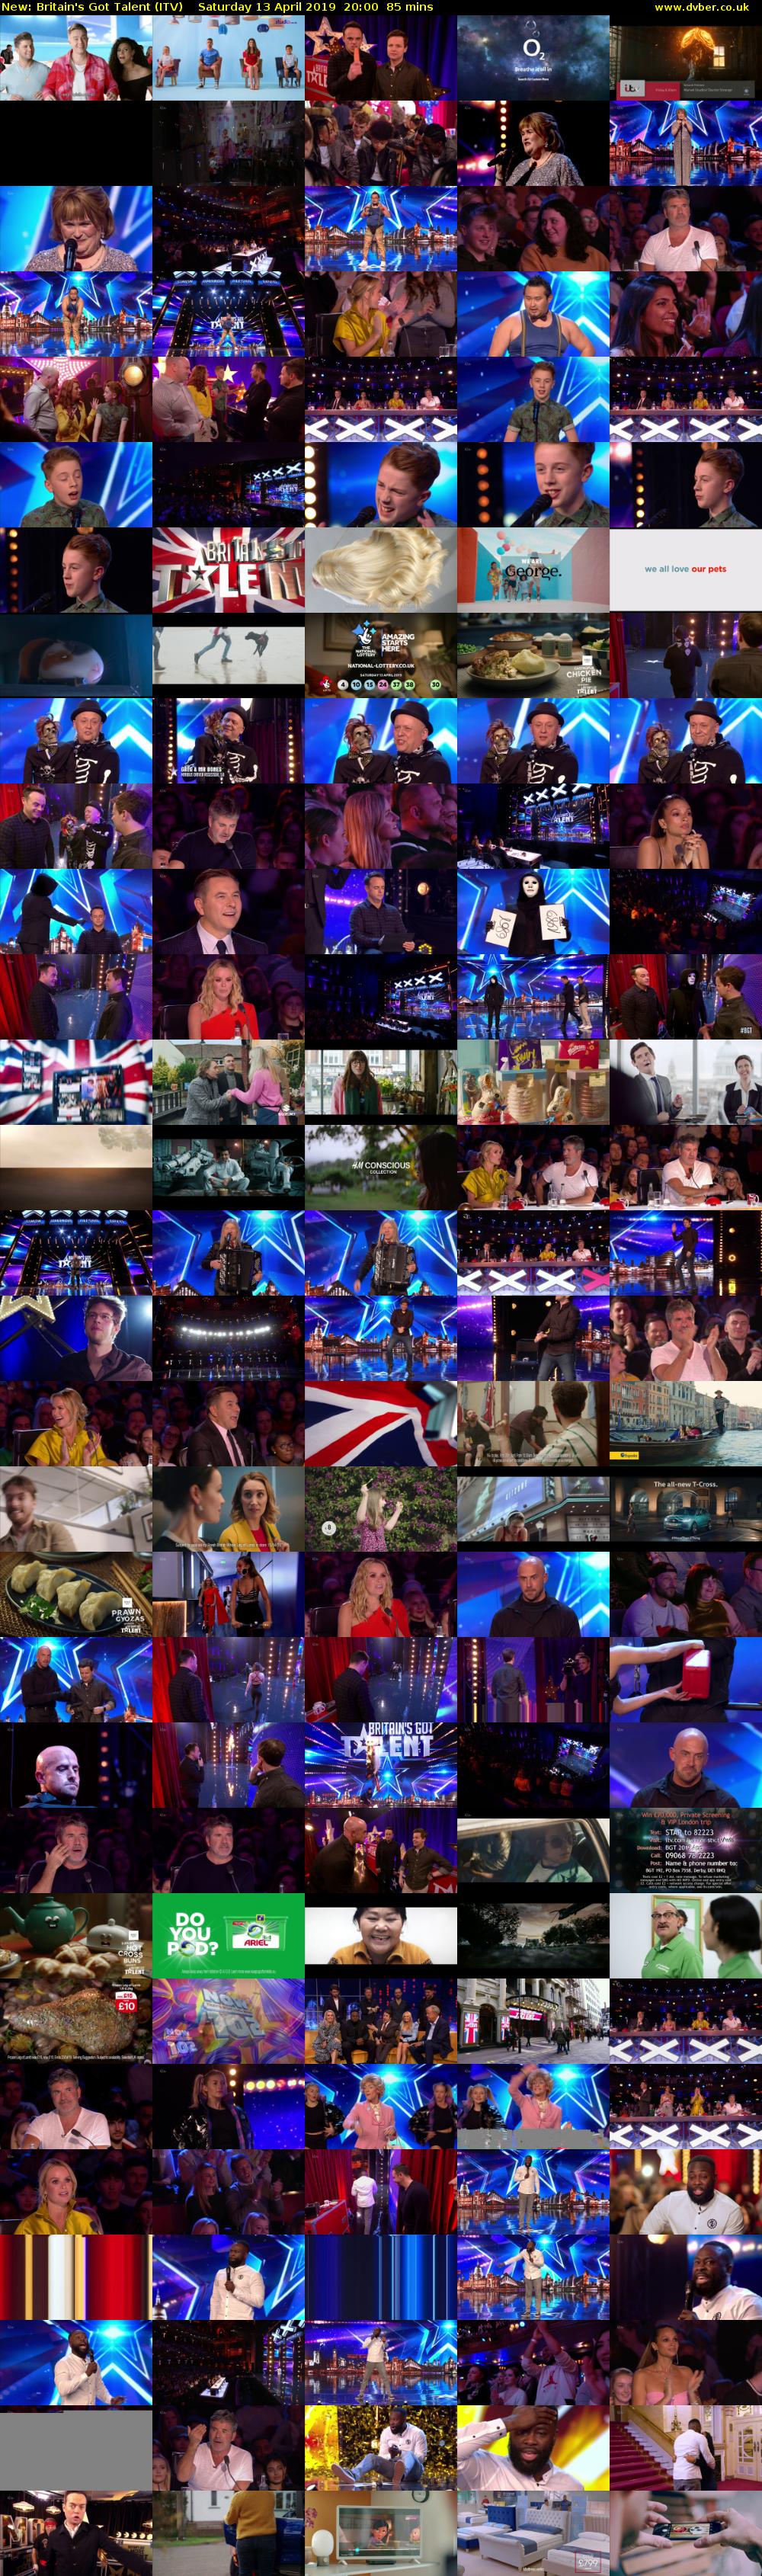 Britain's Got Talent (ITV) Saturday 13 April 2019 20:00 - 21:25